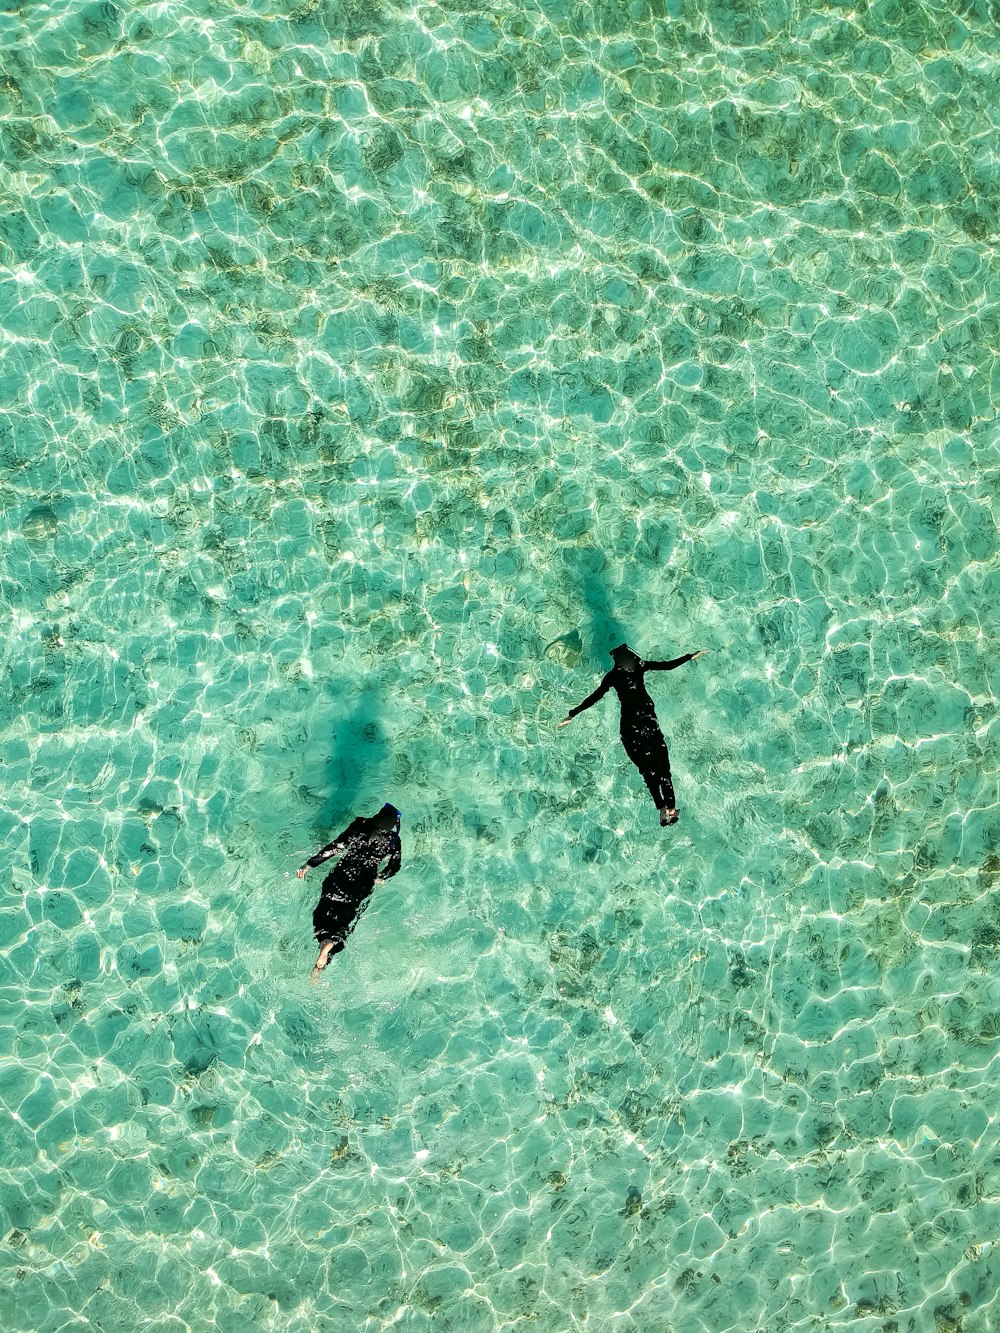 수역에서 수영하는 두 사람의 항공 사진